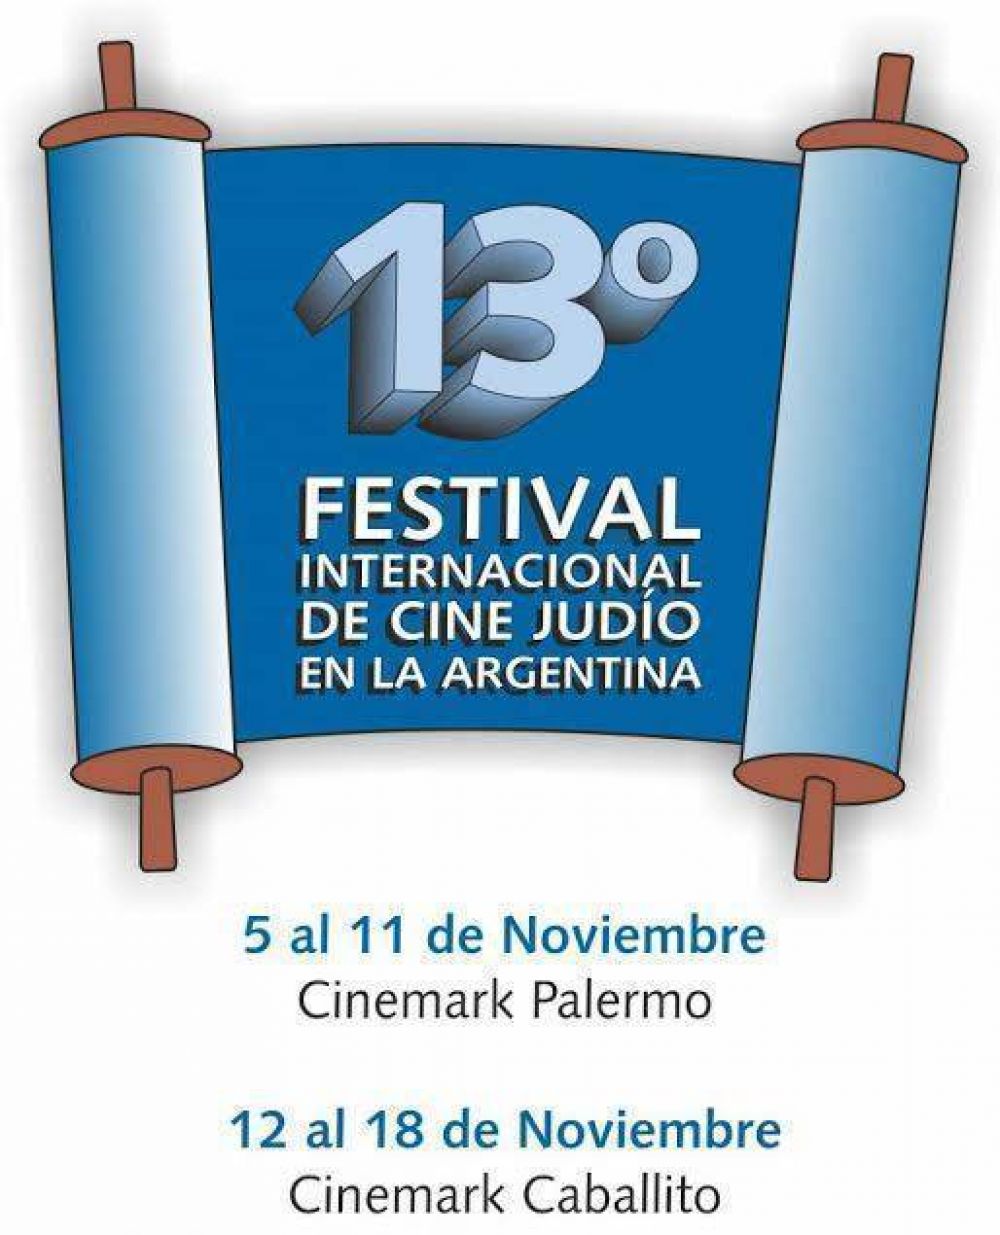 Hoy comienza el Festival Internacional de Cine Judío en la Argentina